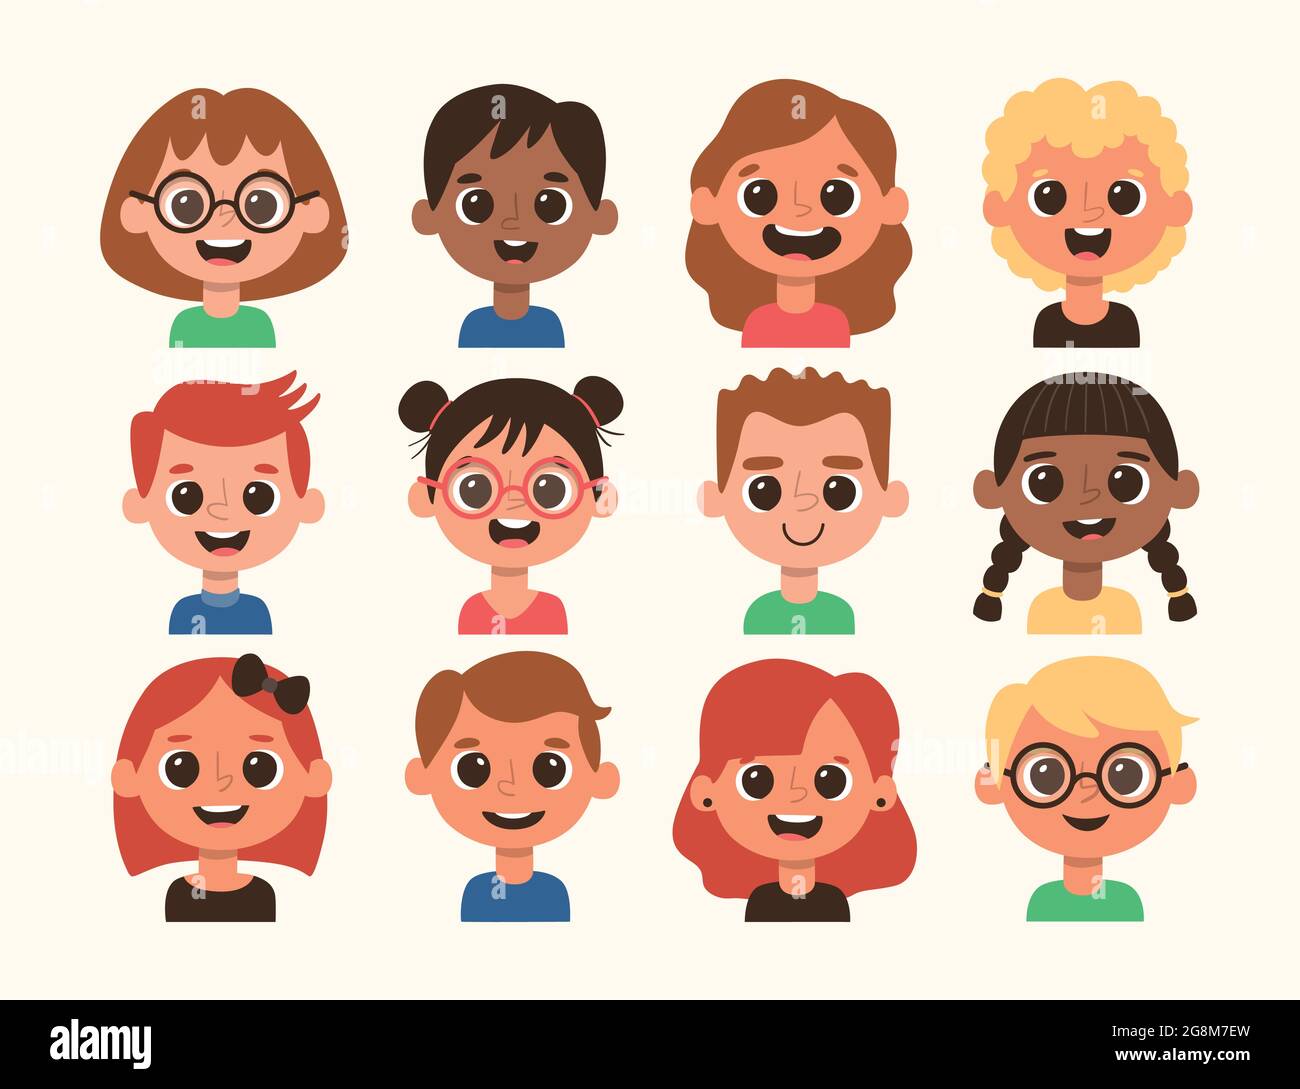 Kinder-Avatar im Cartoon-Stil. Unterschiedliche Frisur und Hautfarbe. Vektorgrafik. Set 4 von 4. Stock Vektor